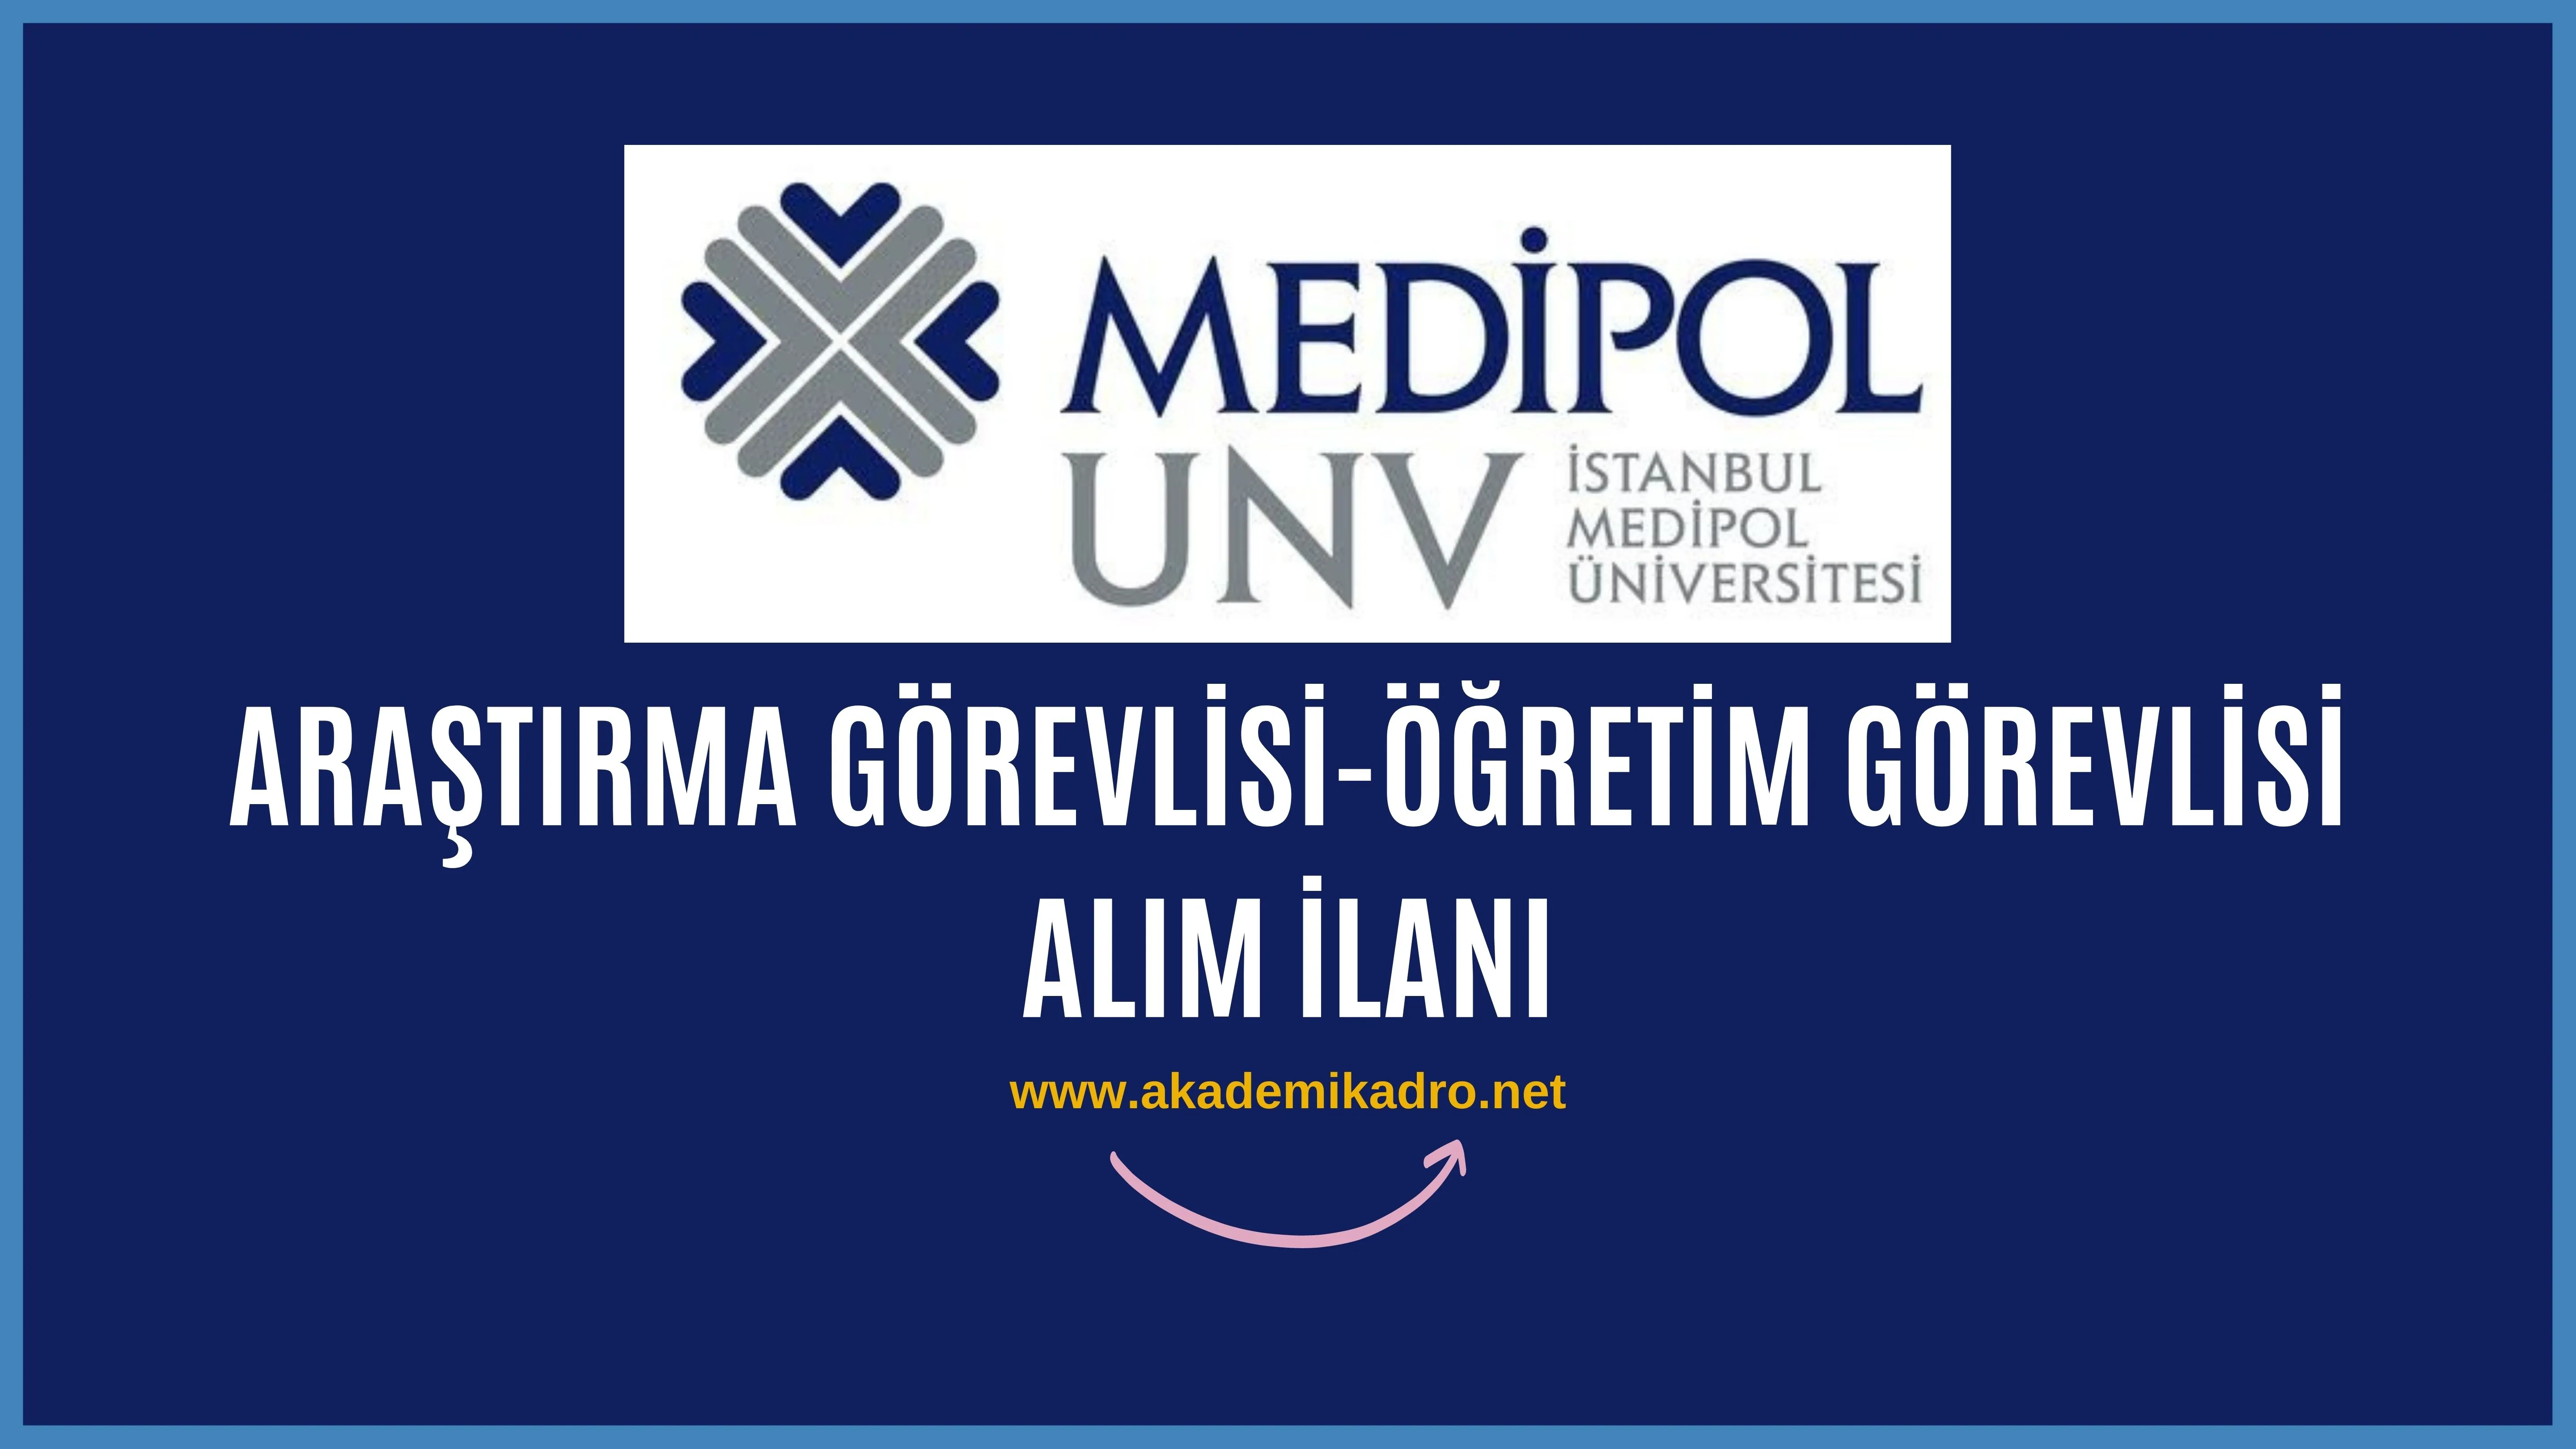 İstanbul Medipol Üniversitesi 3 Araştırma görevlisi ve 3 Öğretim görevlisi alacaktır. Son başvuru tarihi 12 Eylül 2022